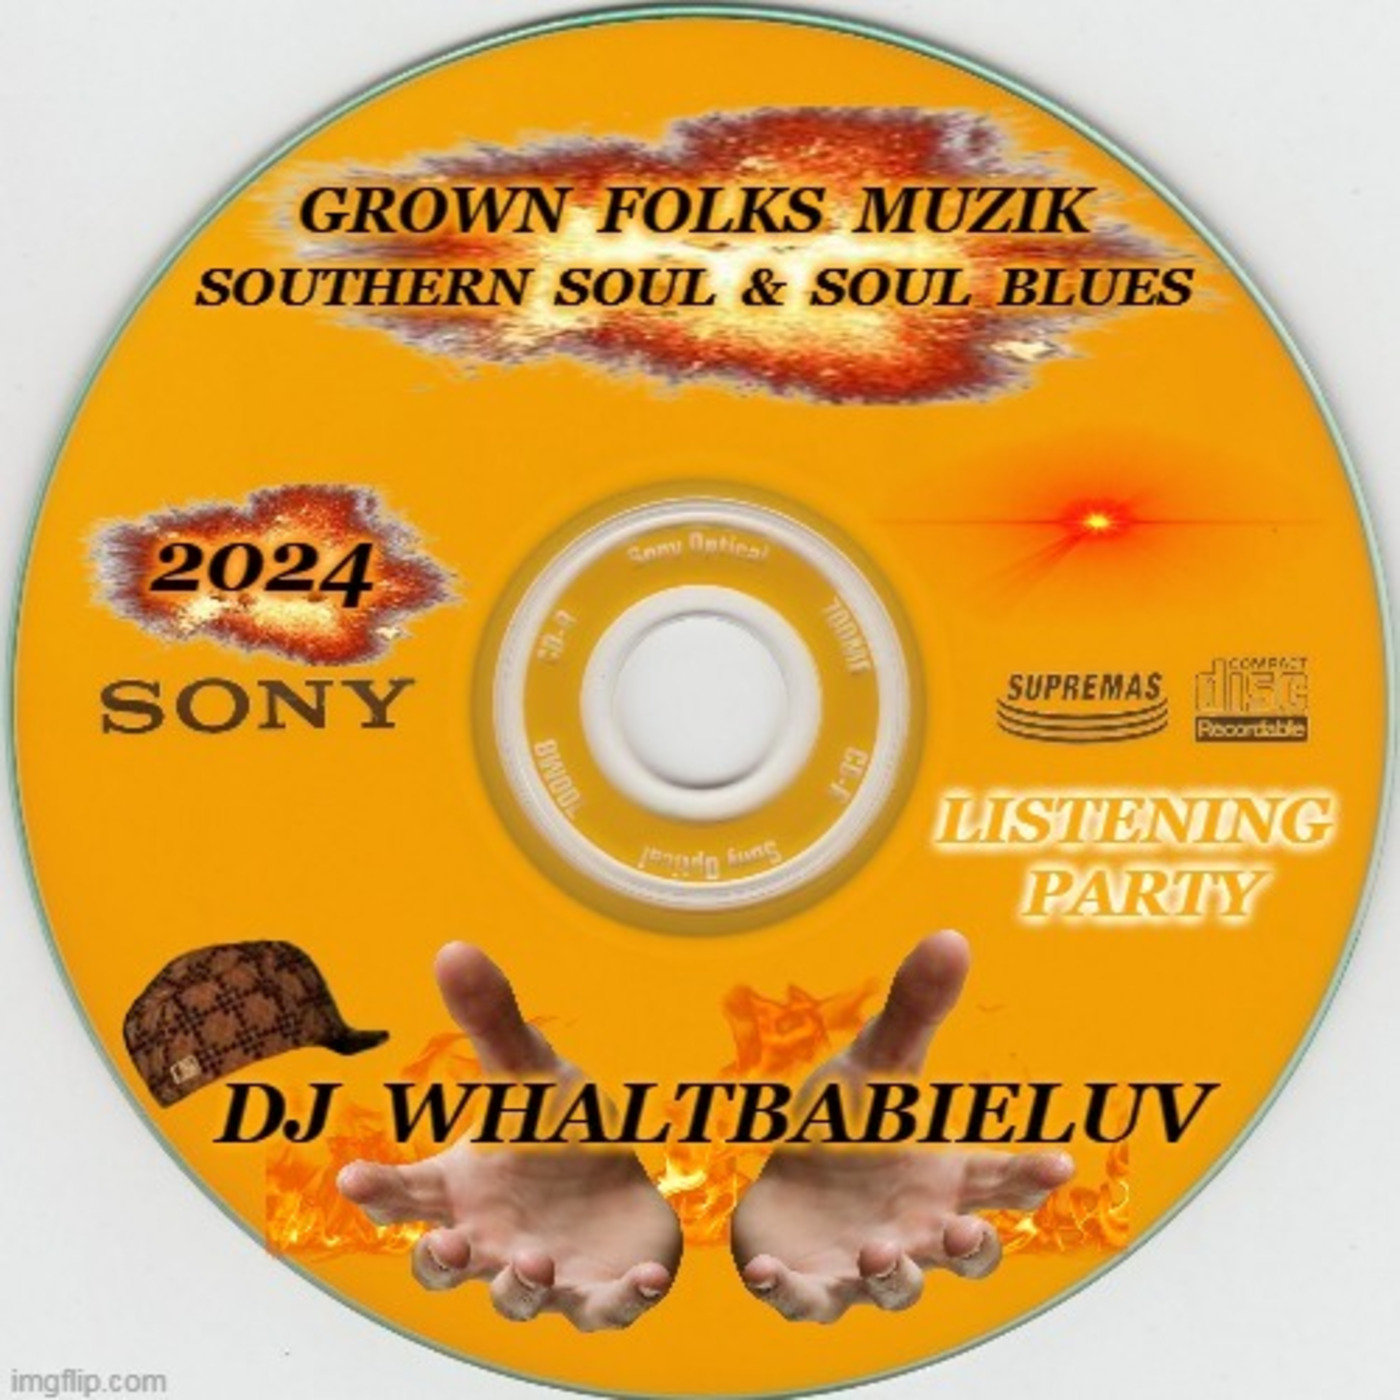 Grown Folks Muzik:  Southern Soul & Soul Blues 2024 (Dj WhaltBabieLuv)